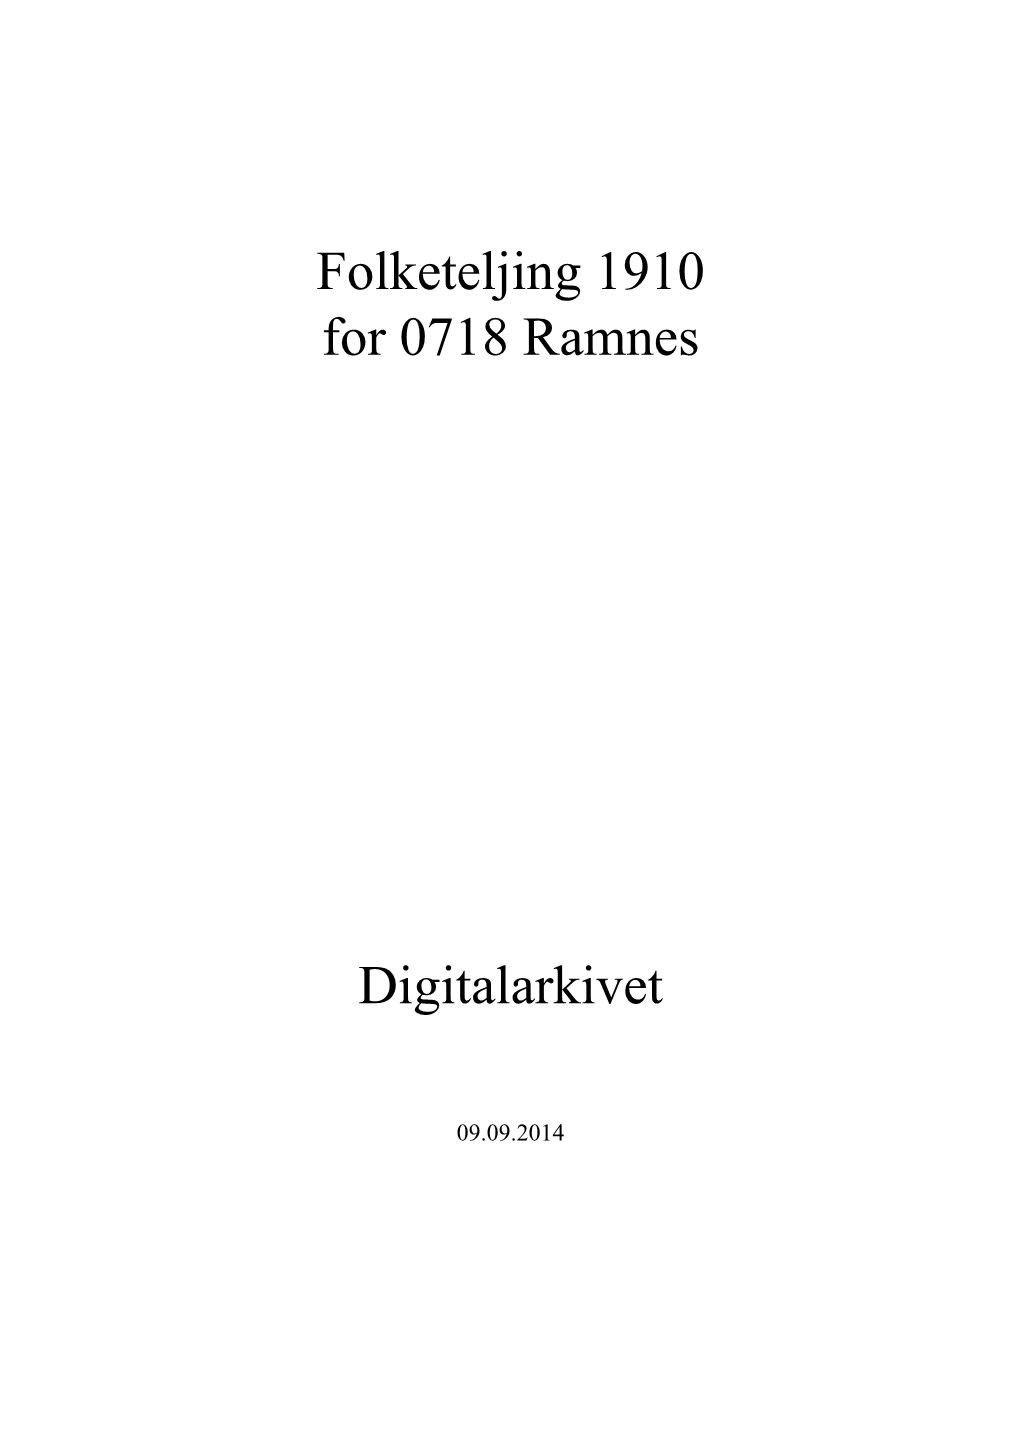 Folketeljing 1910 for 0718 Ramnes Digitalarkivet